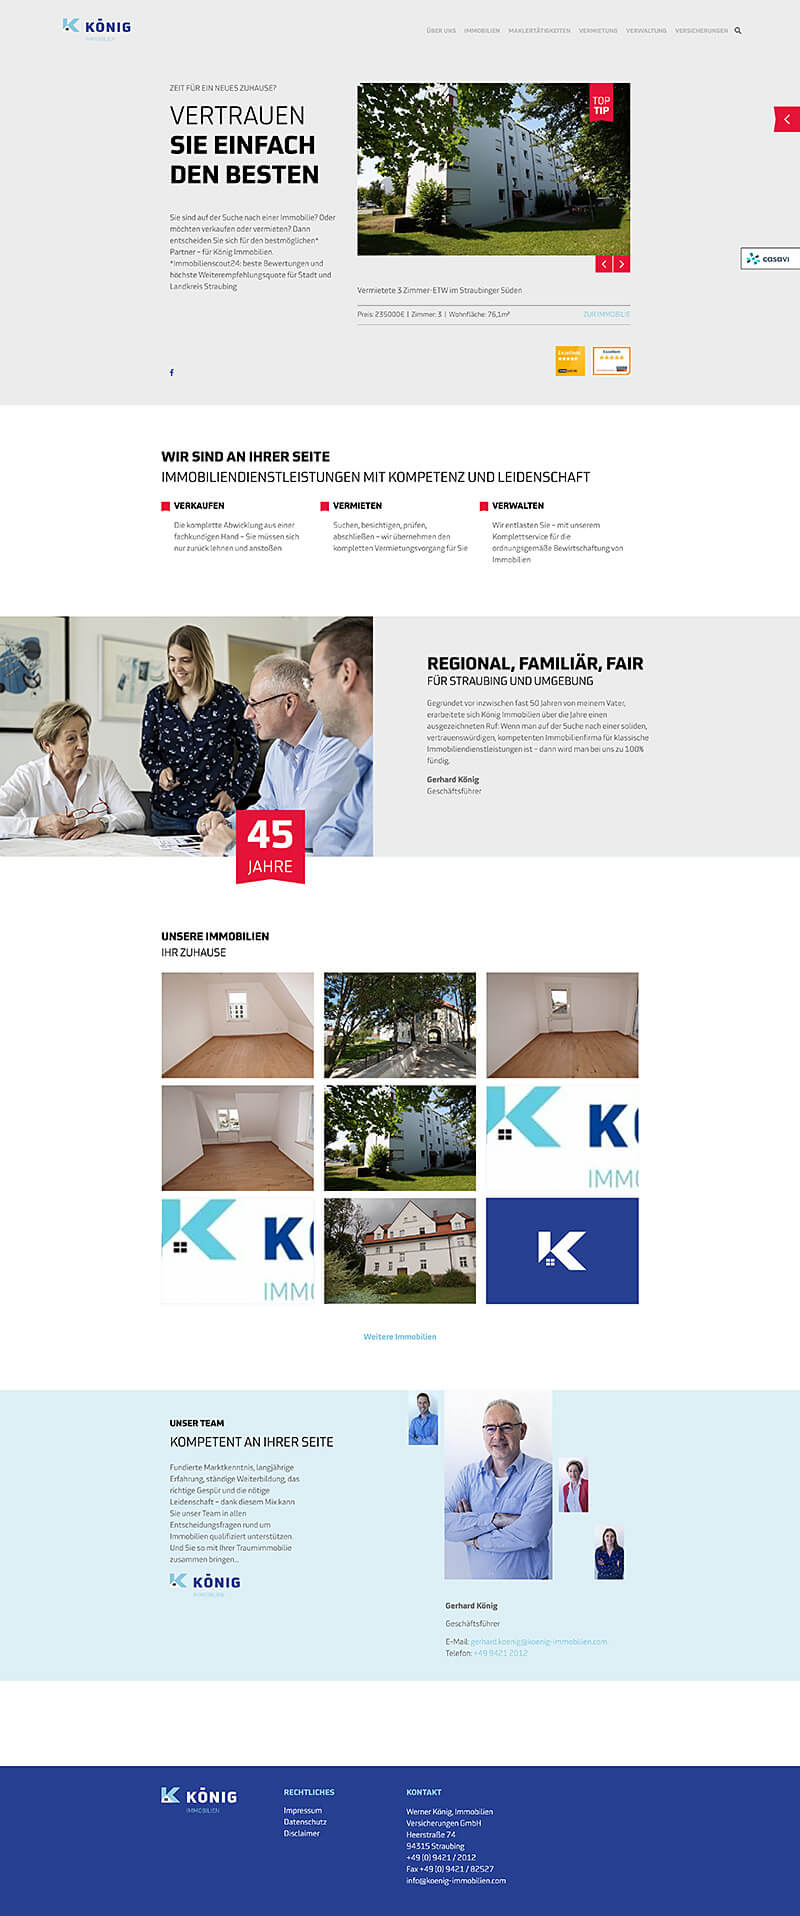 Websitescreenshot: König Immobilien